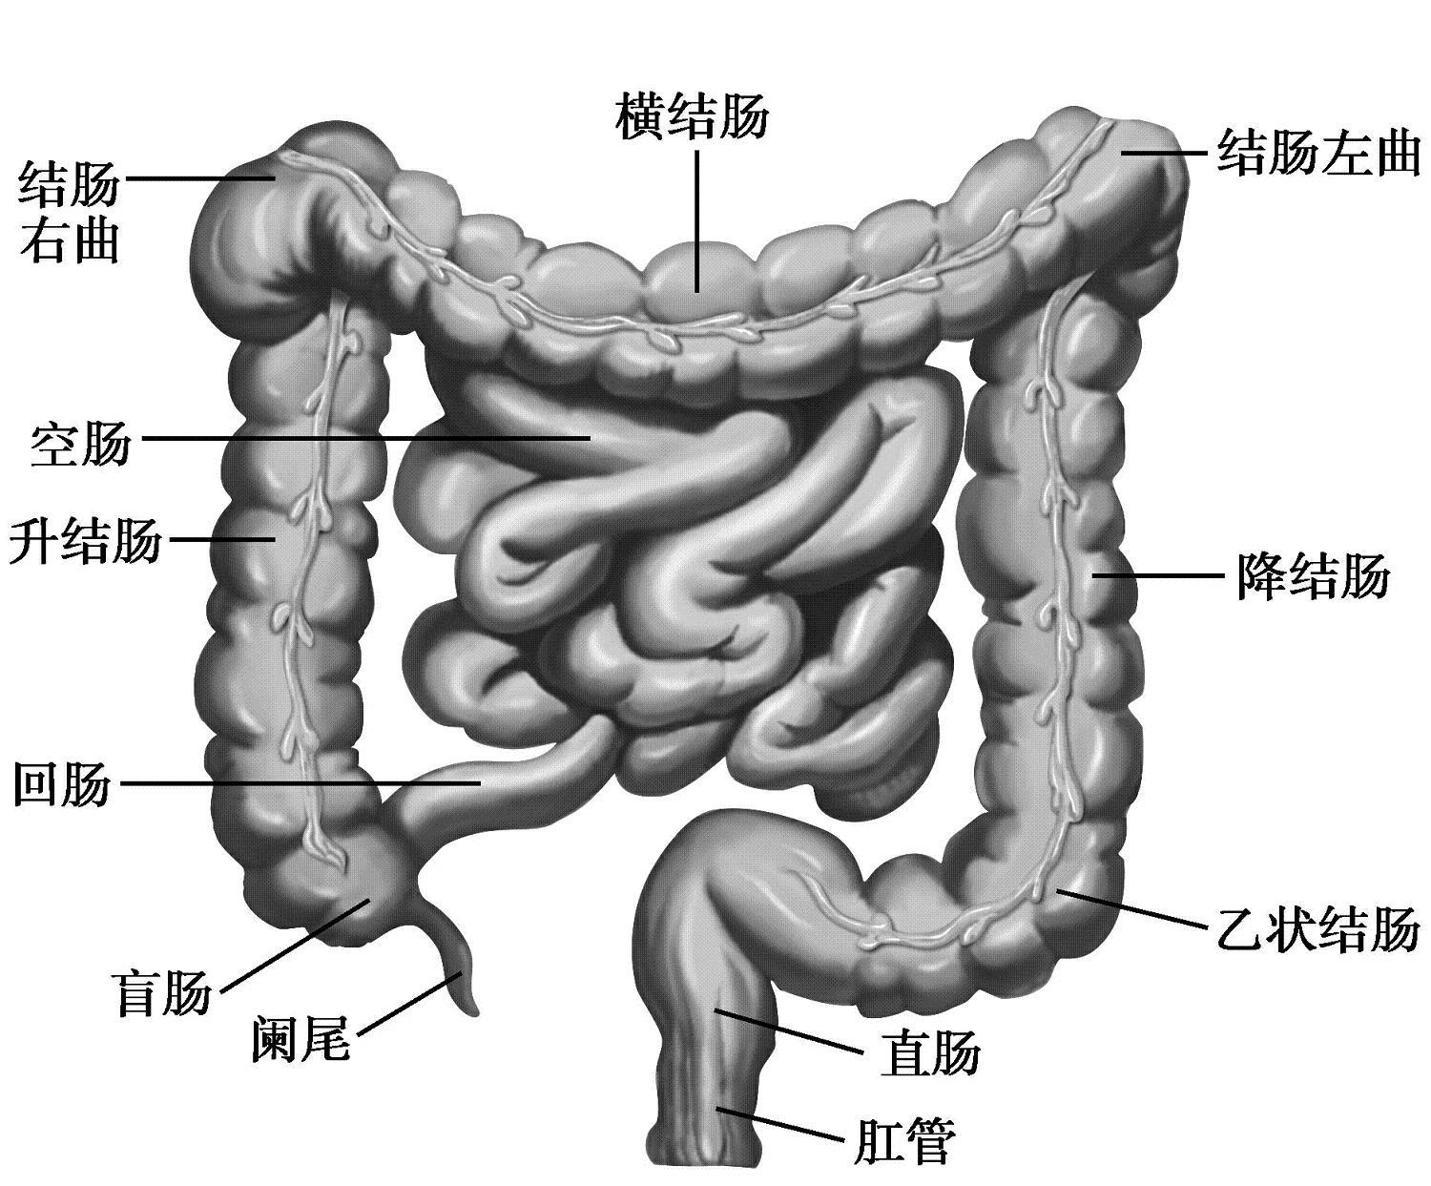 的管道,包括口腔,咽,食管,胃,小肠(十二指肠,空肠和回肠)和大肠(盲肠